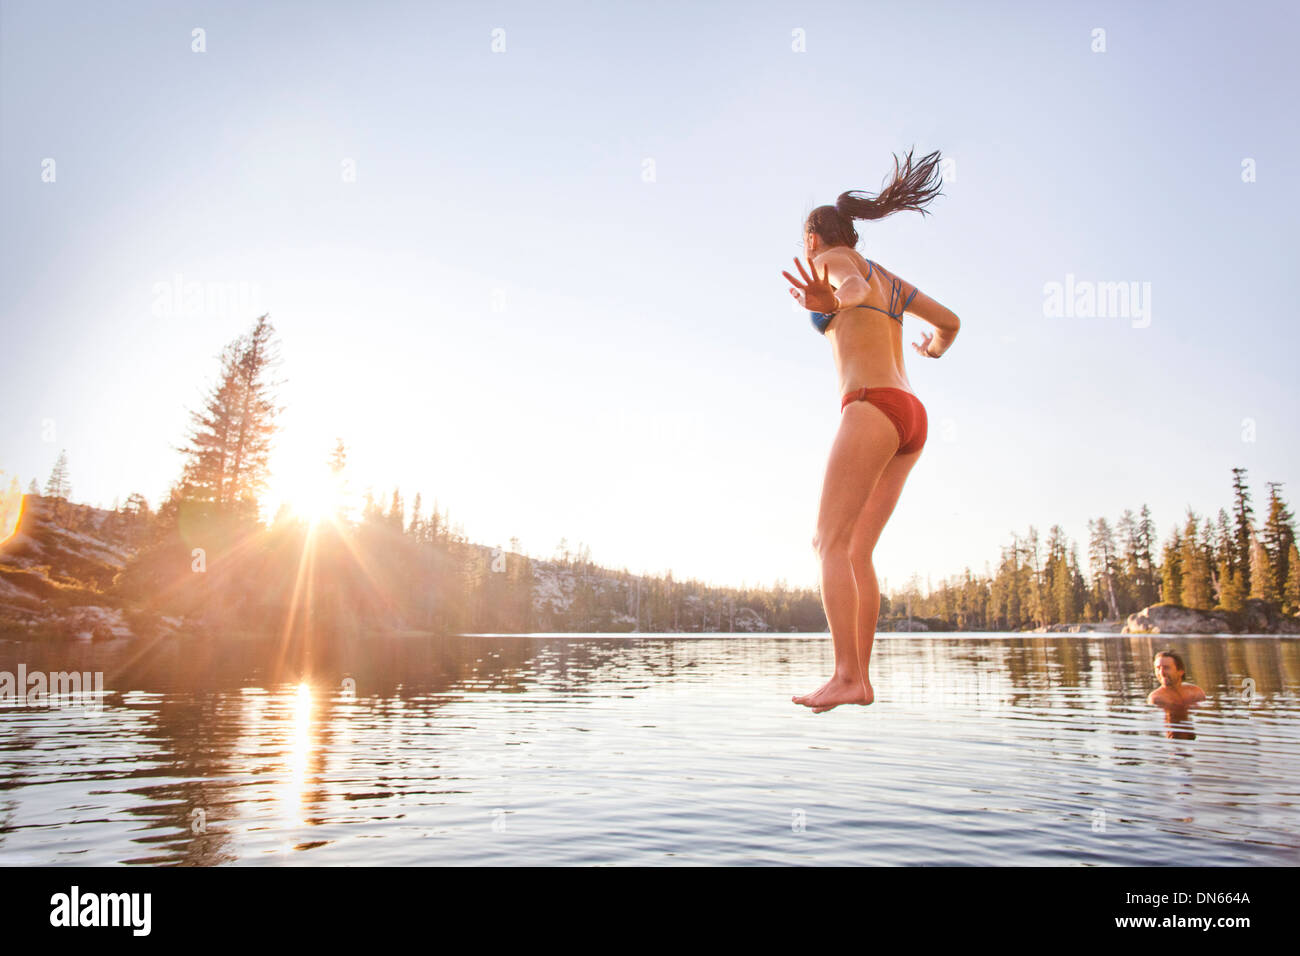 Woman jumping into rural lake Stock Photo